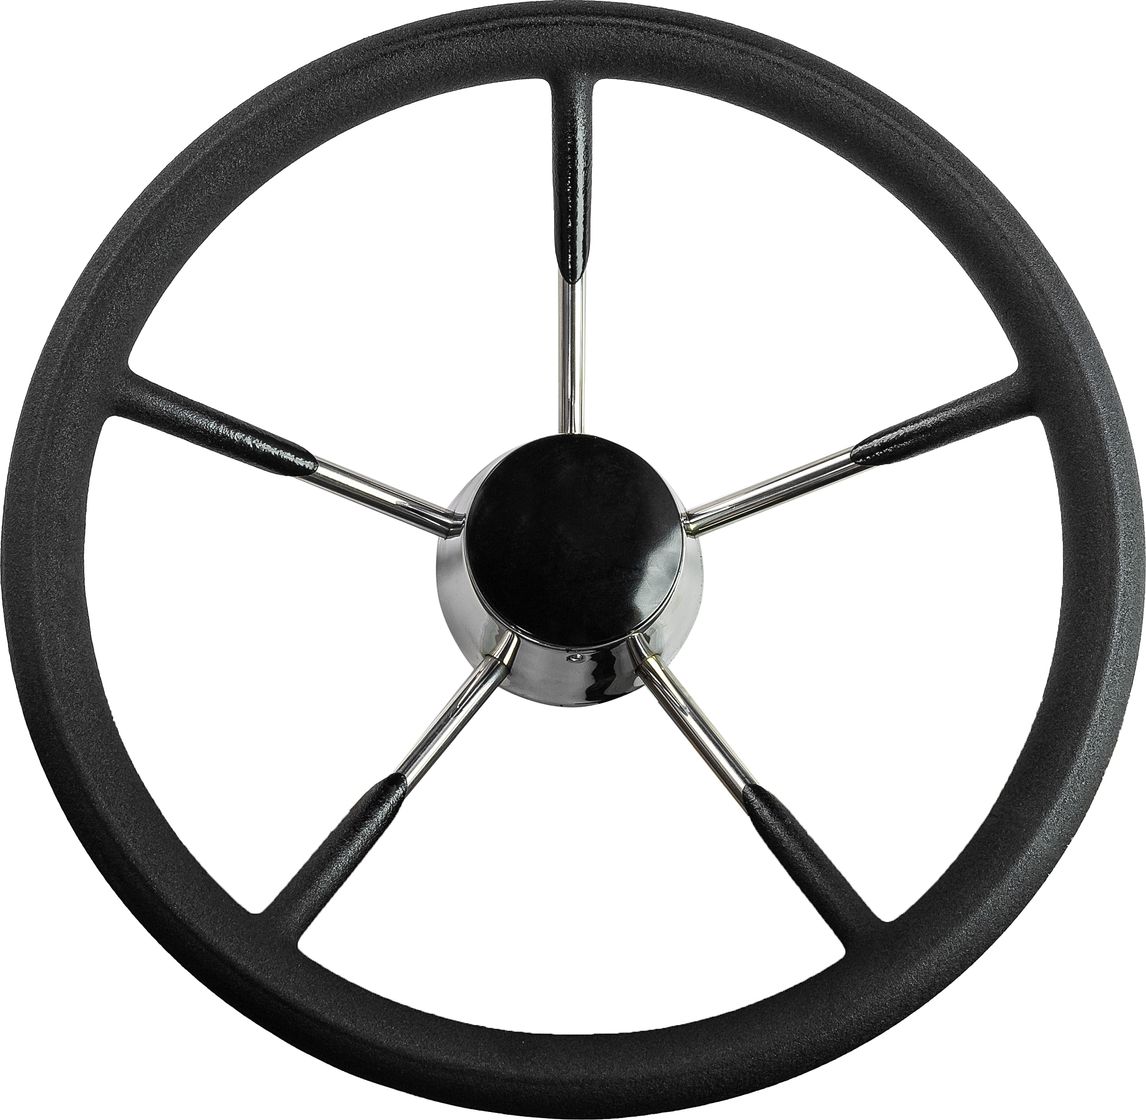 Рулевое колесо черный обод, стальные спицы, диаметр 340 мм 73053-01 рулевое колесо диаметр 320 мм 73059 01sl